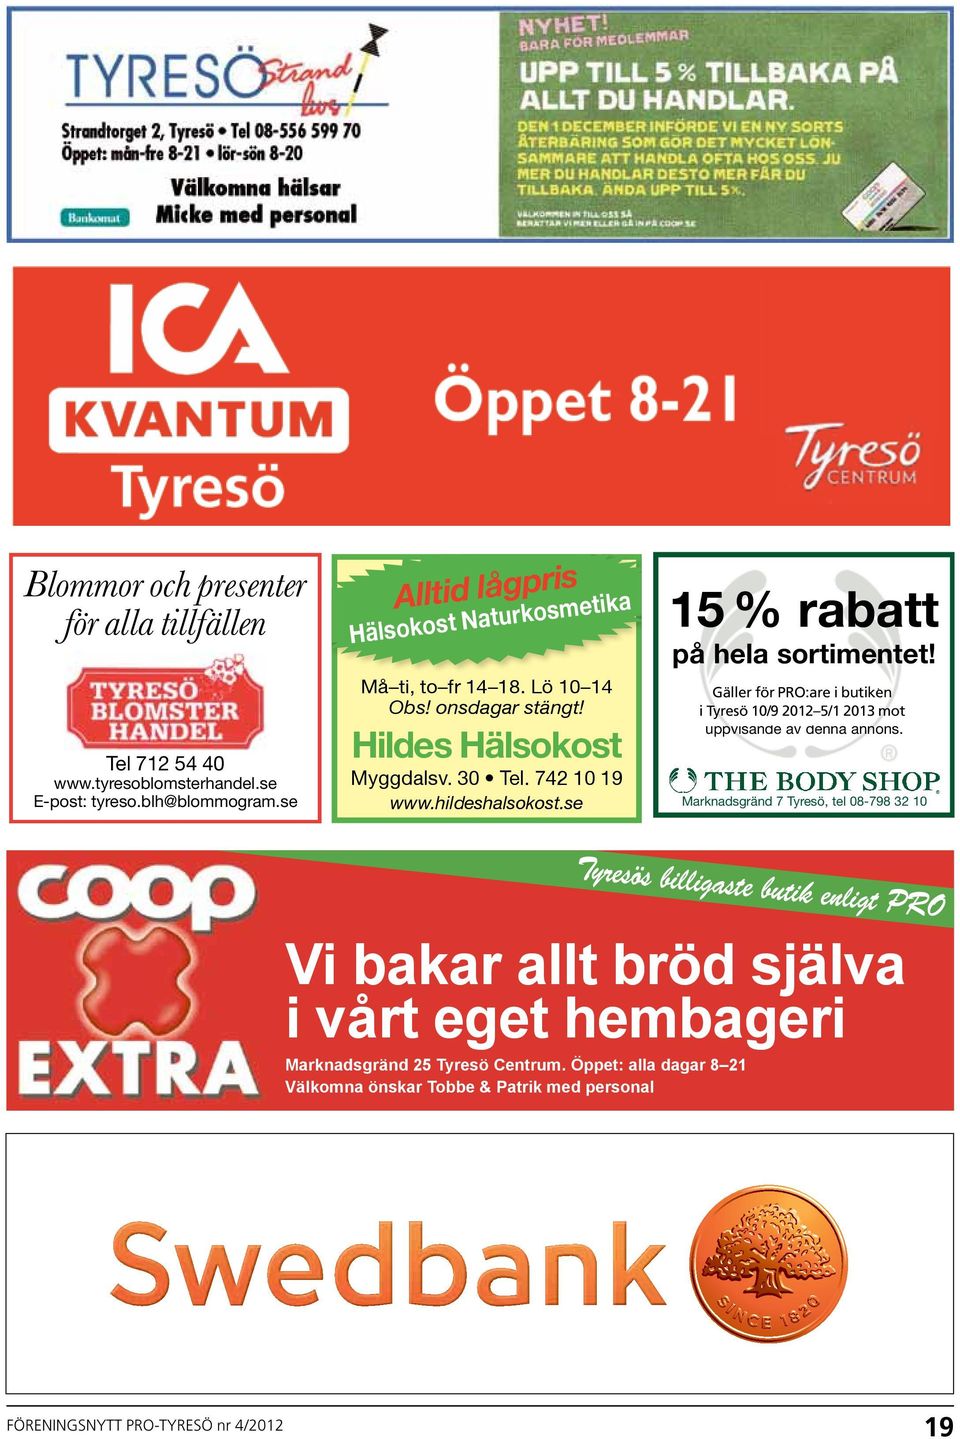 Gäller Gäller för i PRO:are butiken i i Tyresö butiken i Tyresö t.o.m. 10/9 31/10-04 2012 5/1 2013 mot mot uppvisande av denna annons.